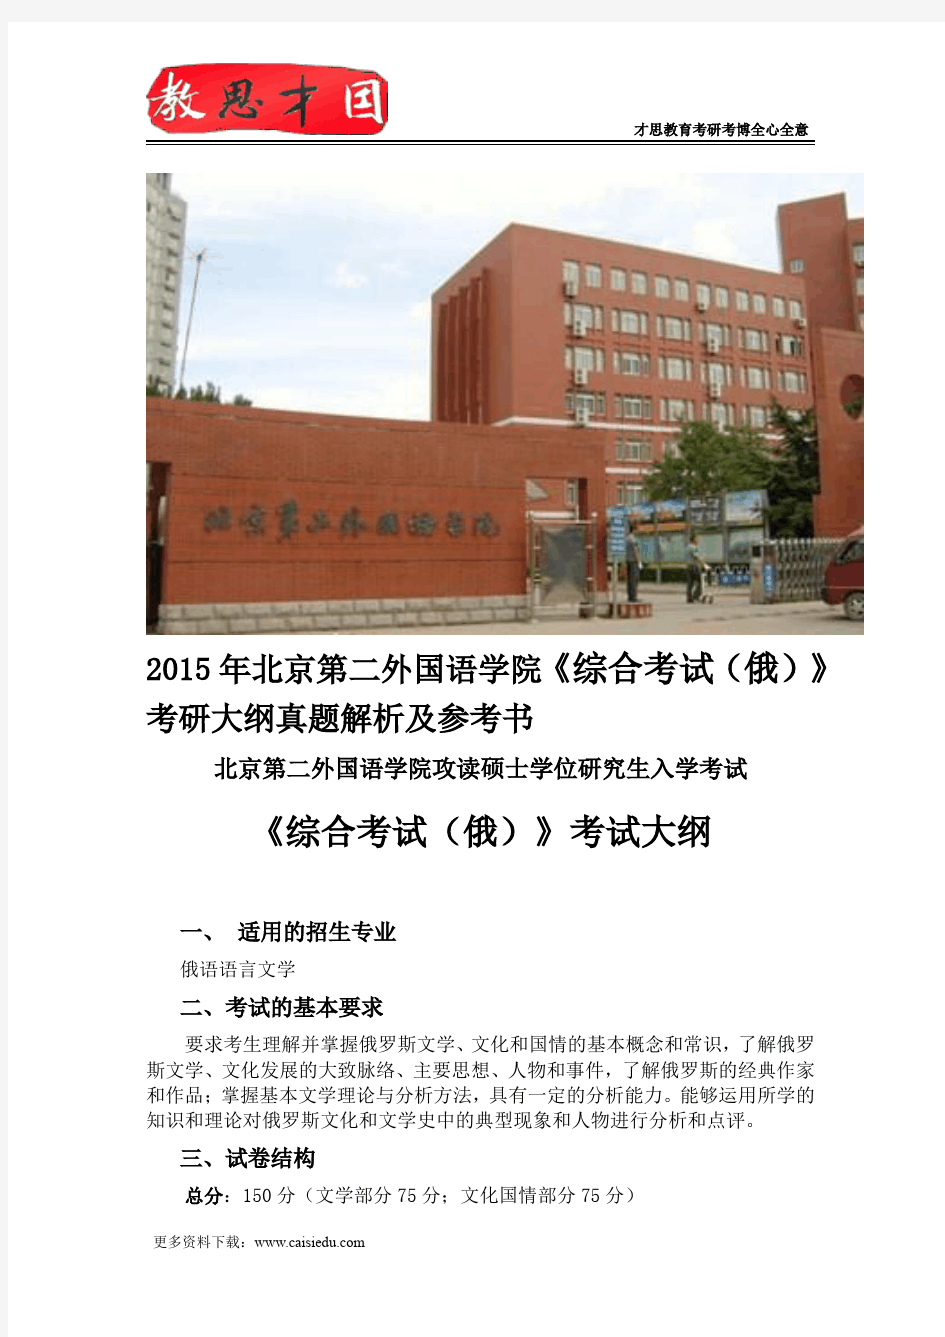 2015年北京第二外国语学院《综合考试(俄)》考研大纲真题解析及参考书